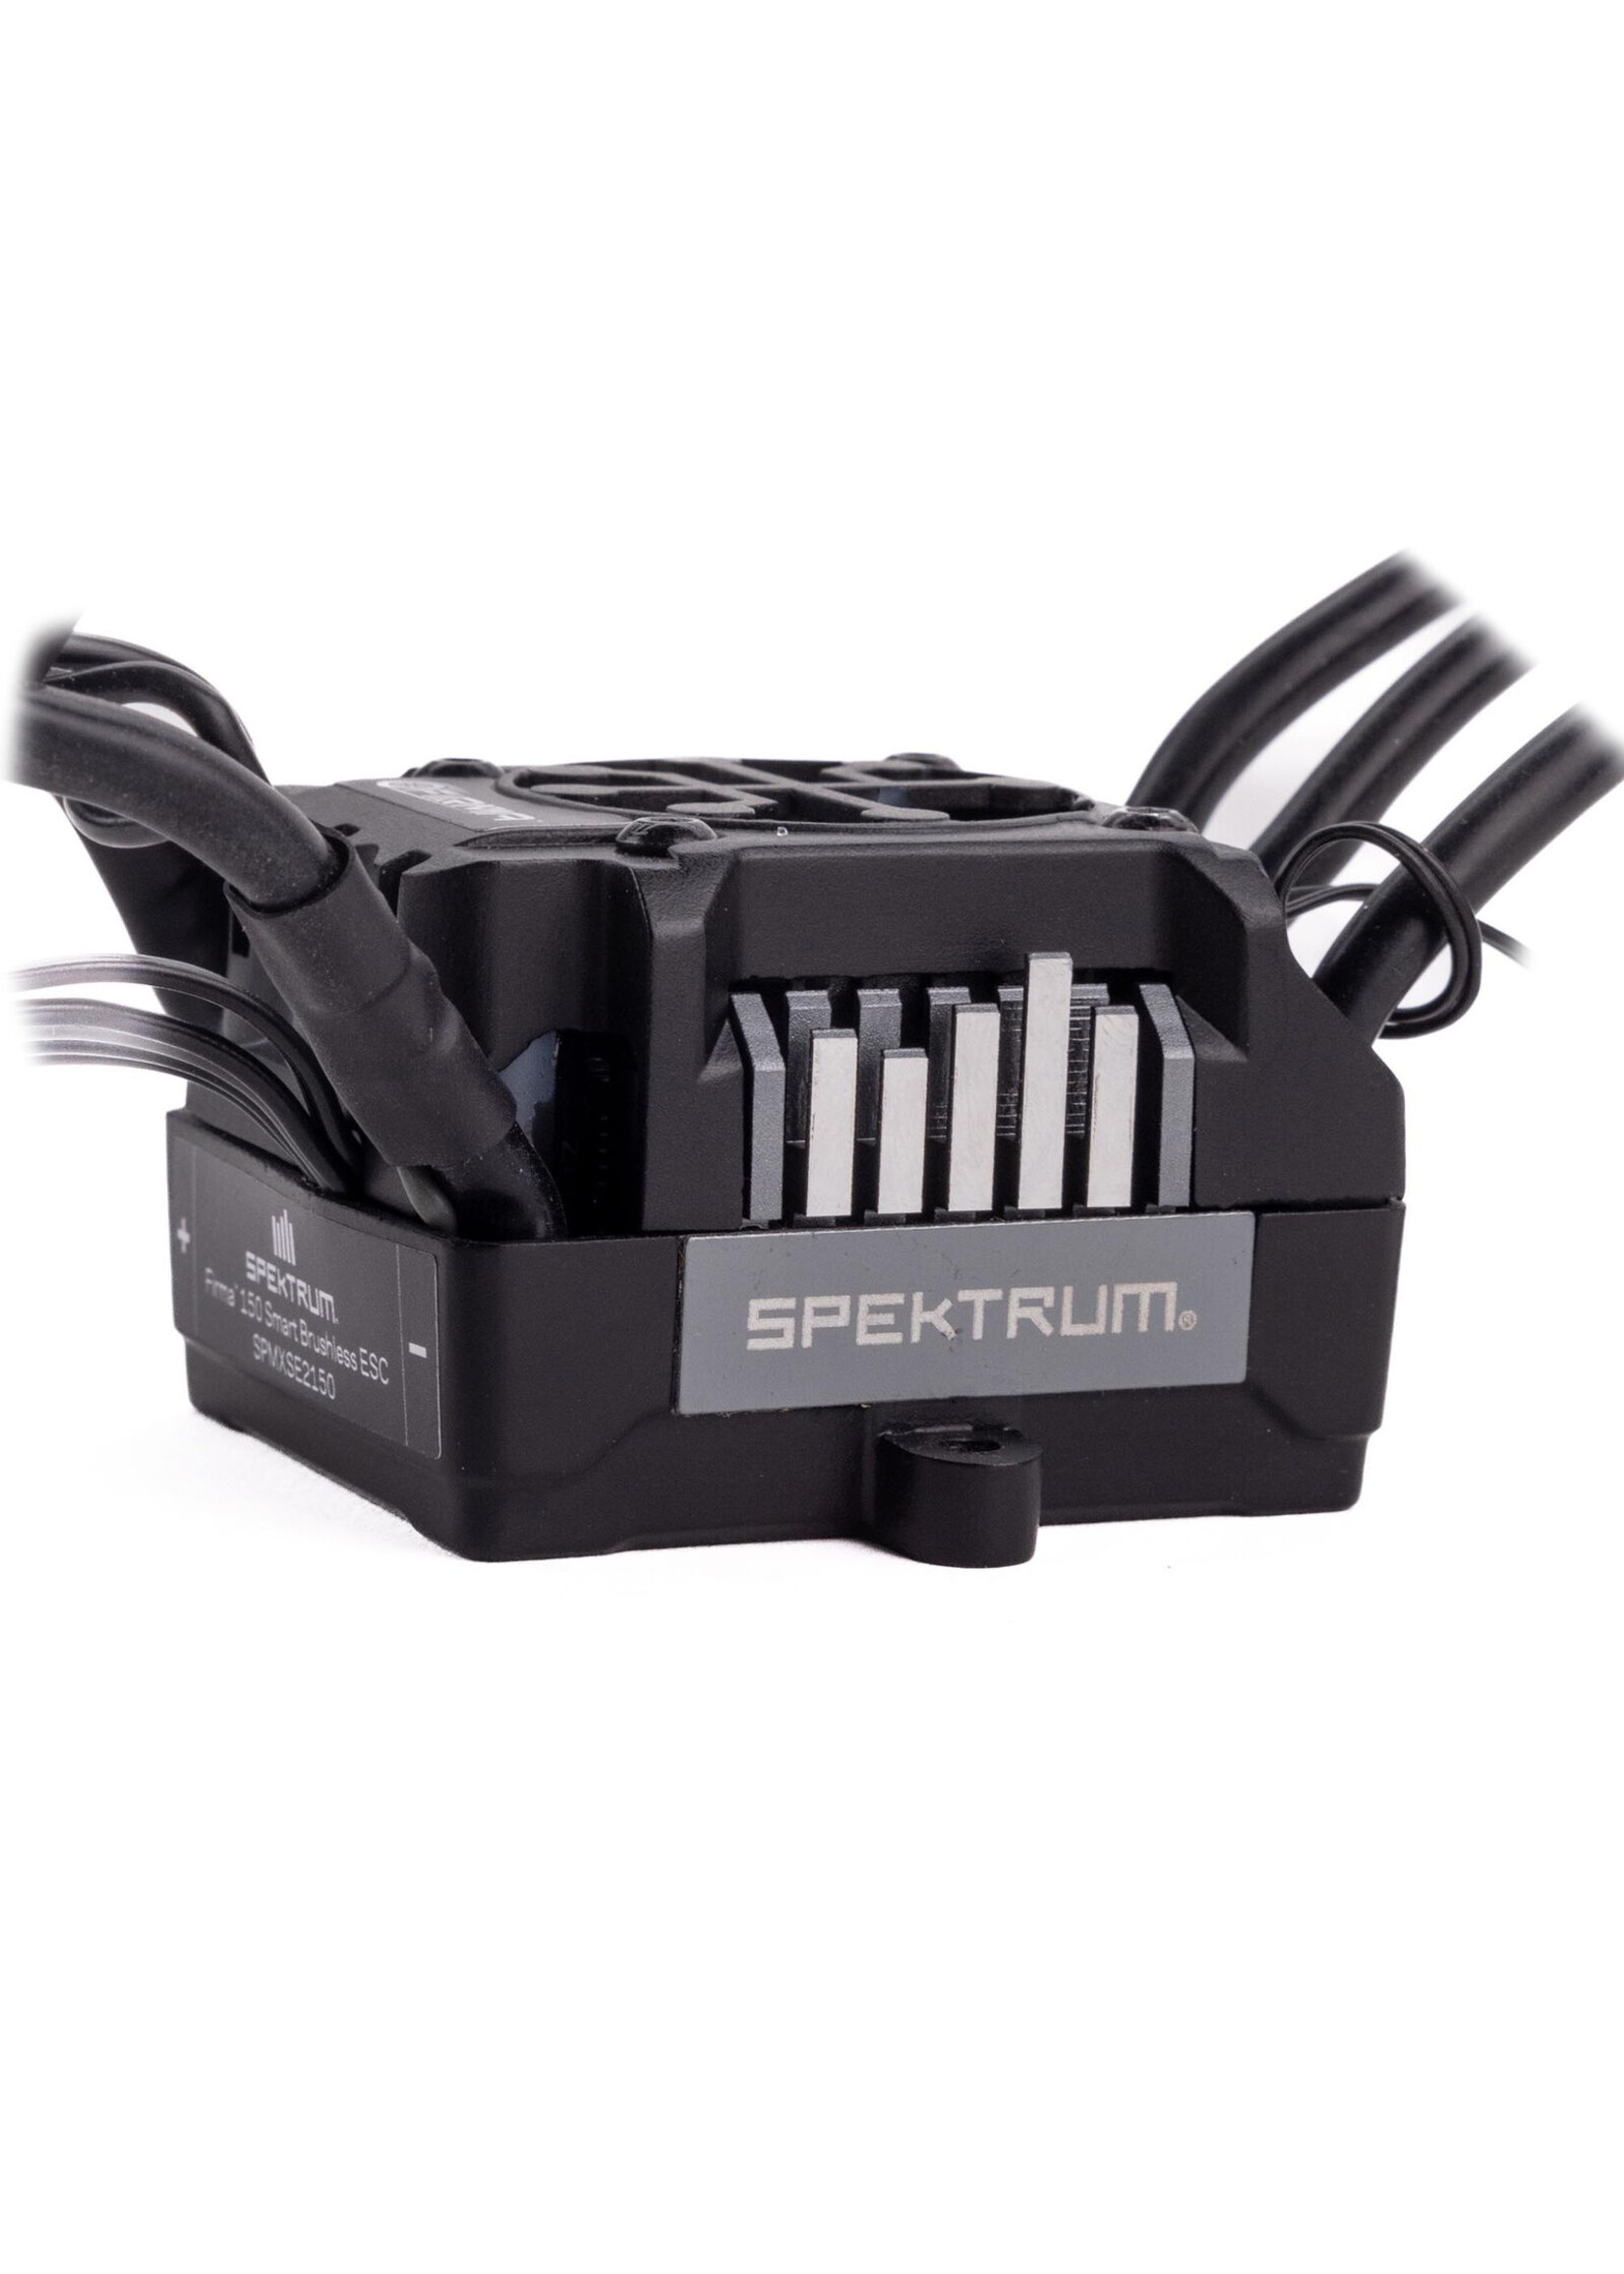 Spektrum SPMXSE2150 - Firma 150 Brushless Smart ESC 3S-6S